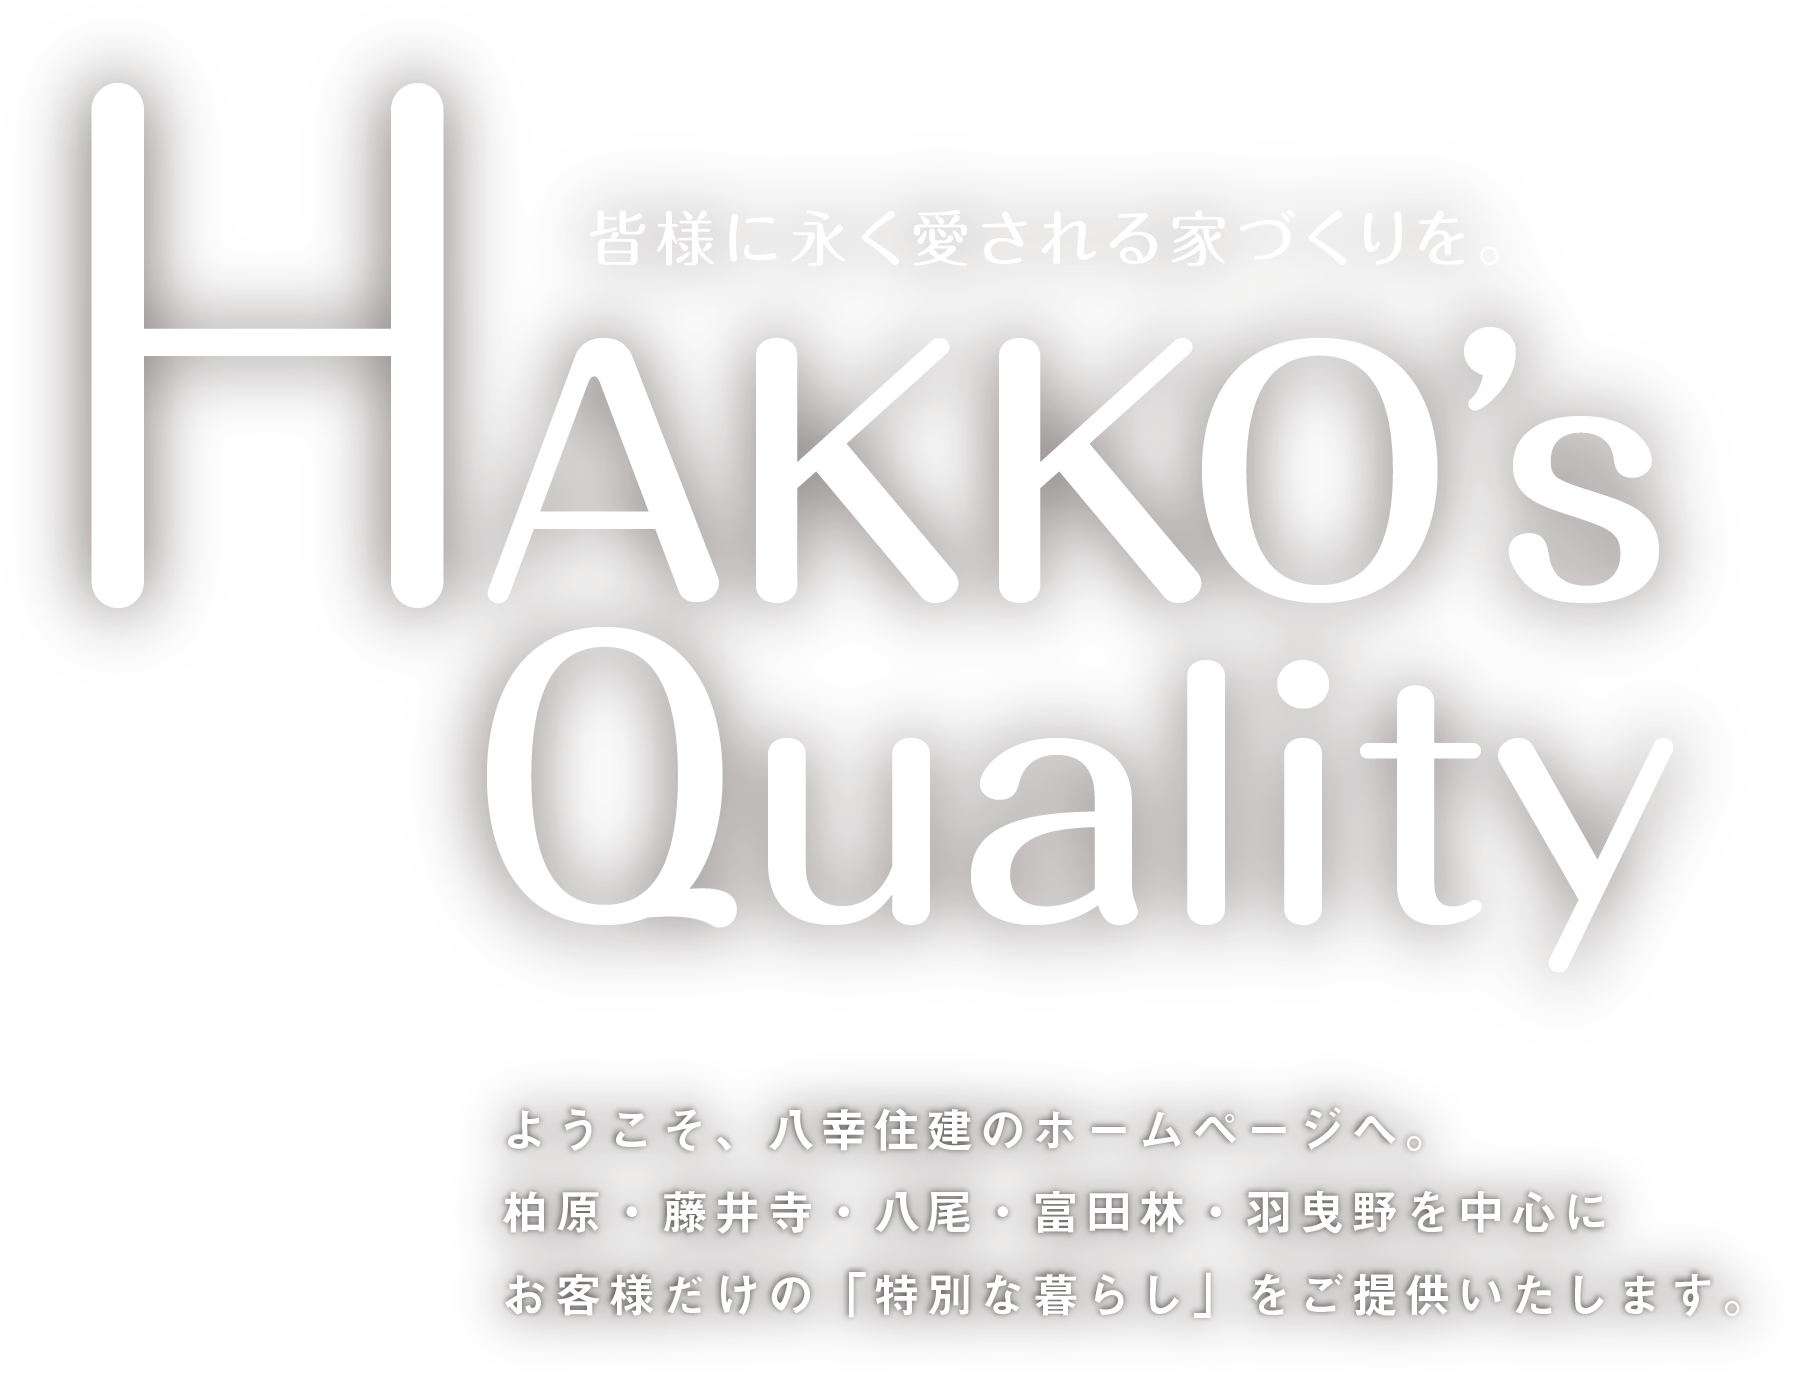 HAKKO's Quality